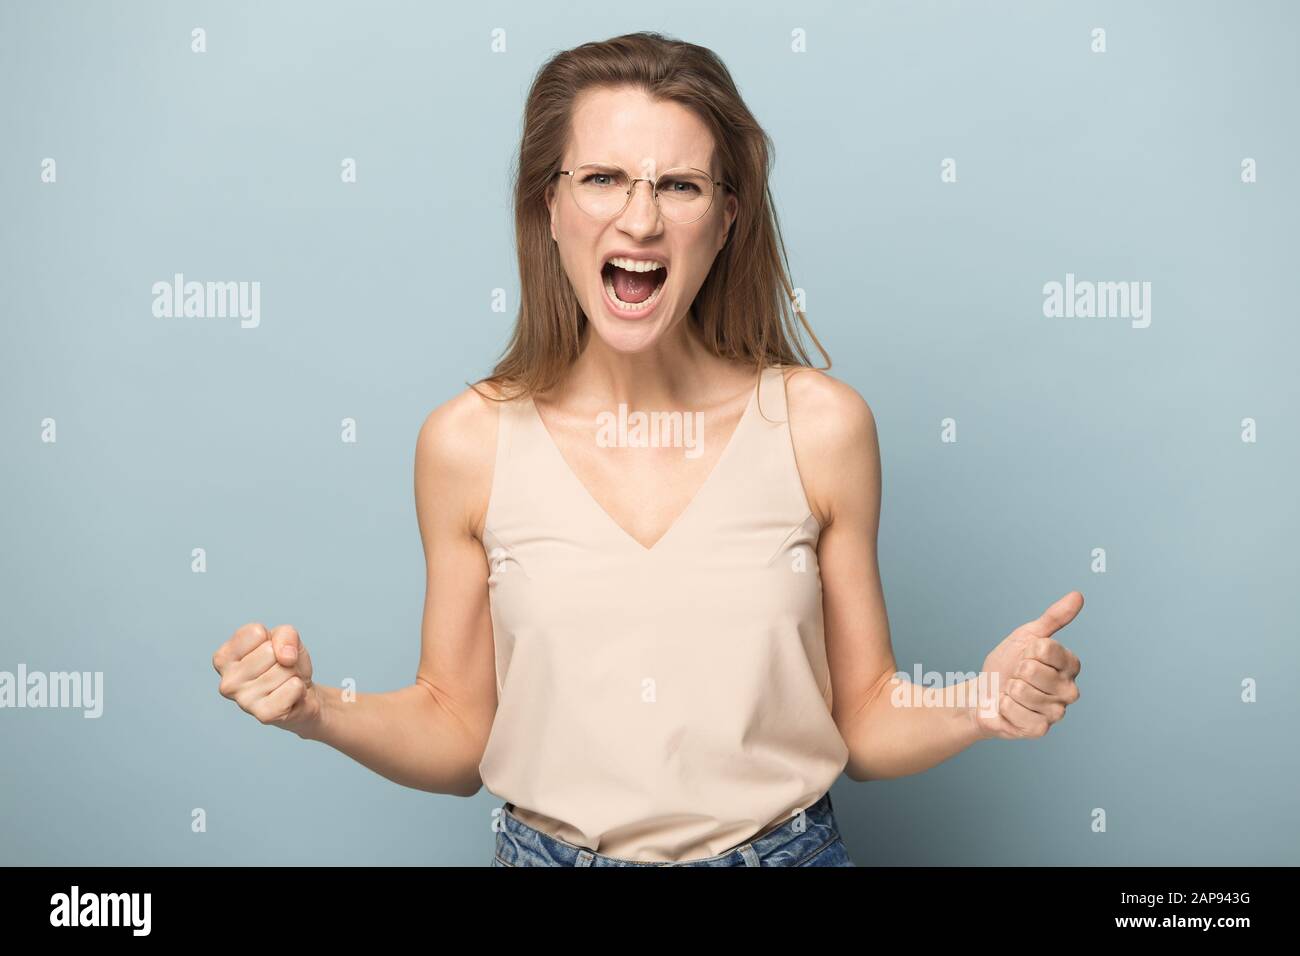 Mujer emocional mostrar fuerza y poder gritar de alegría Foto de stock